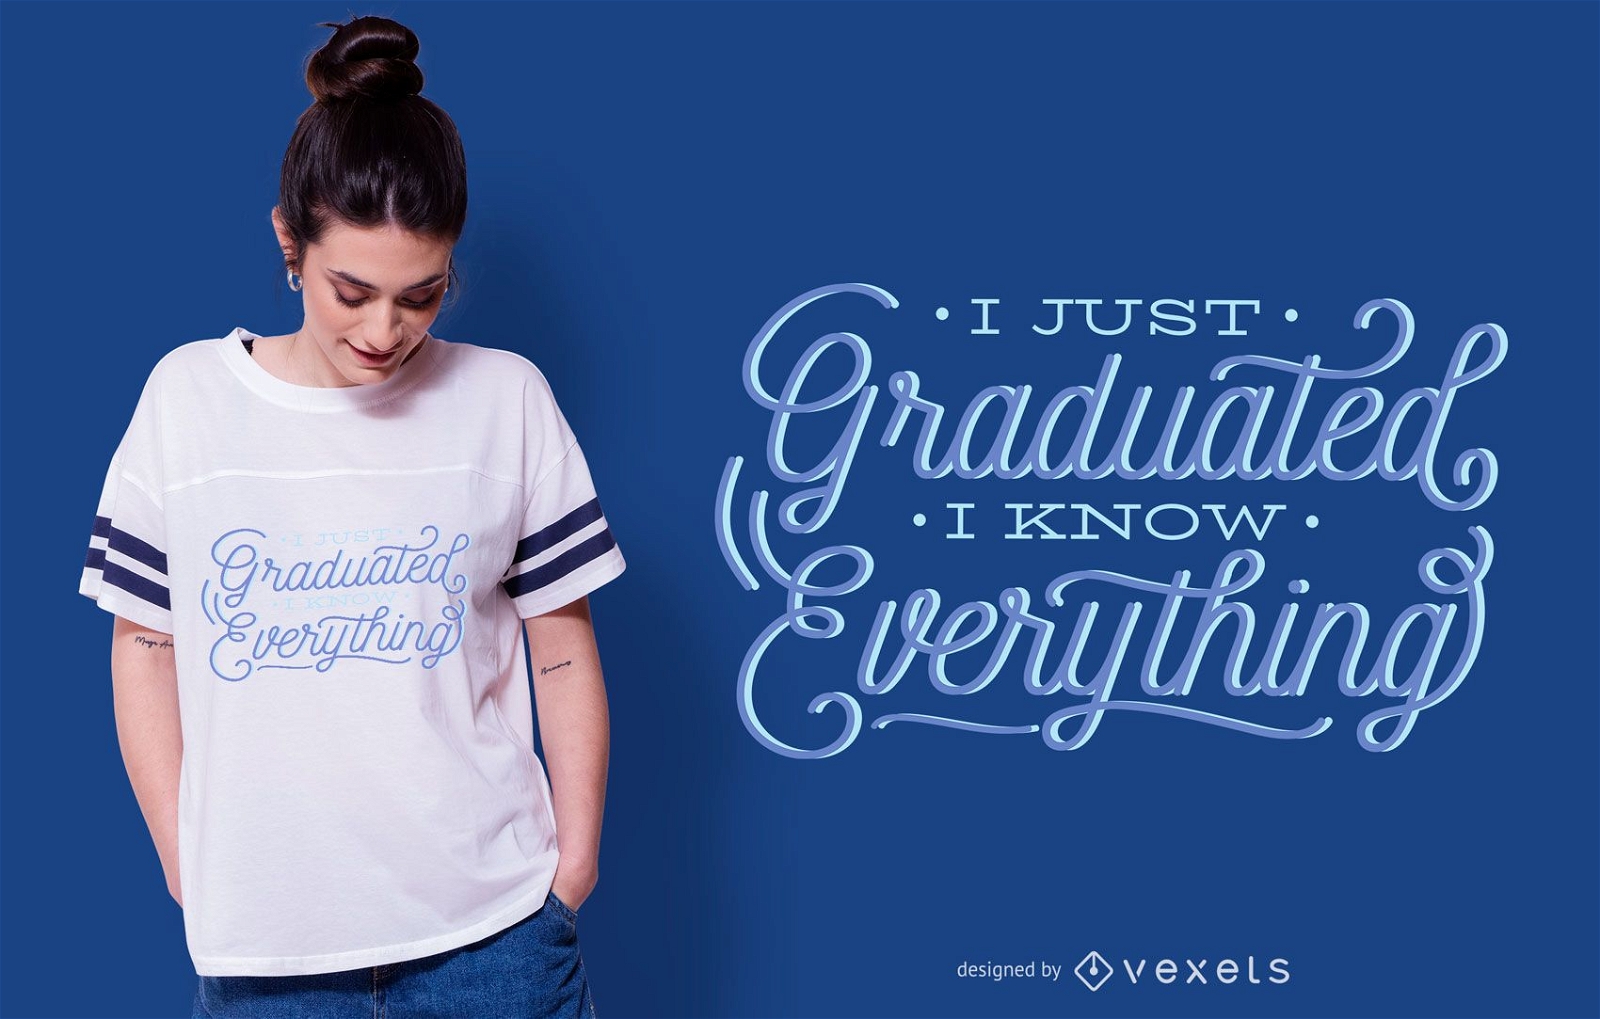 Dise?o divertido de camiseta con letras de graduaci?n